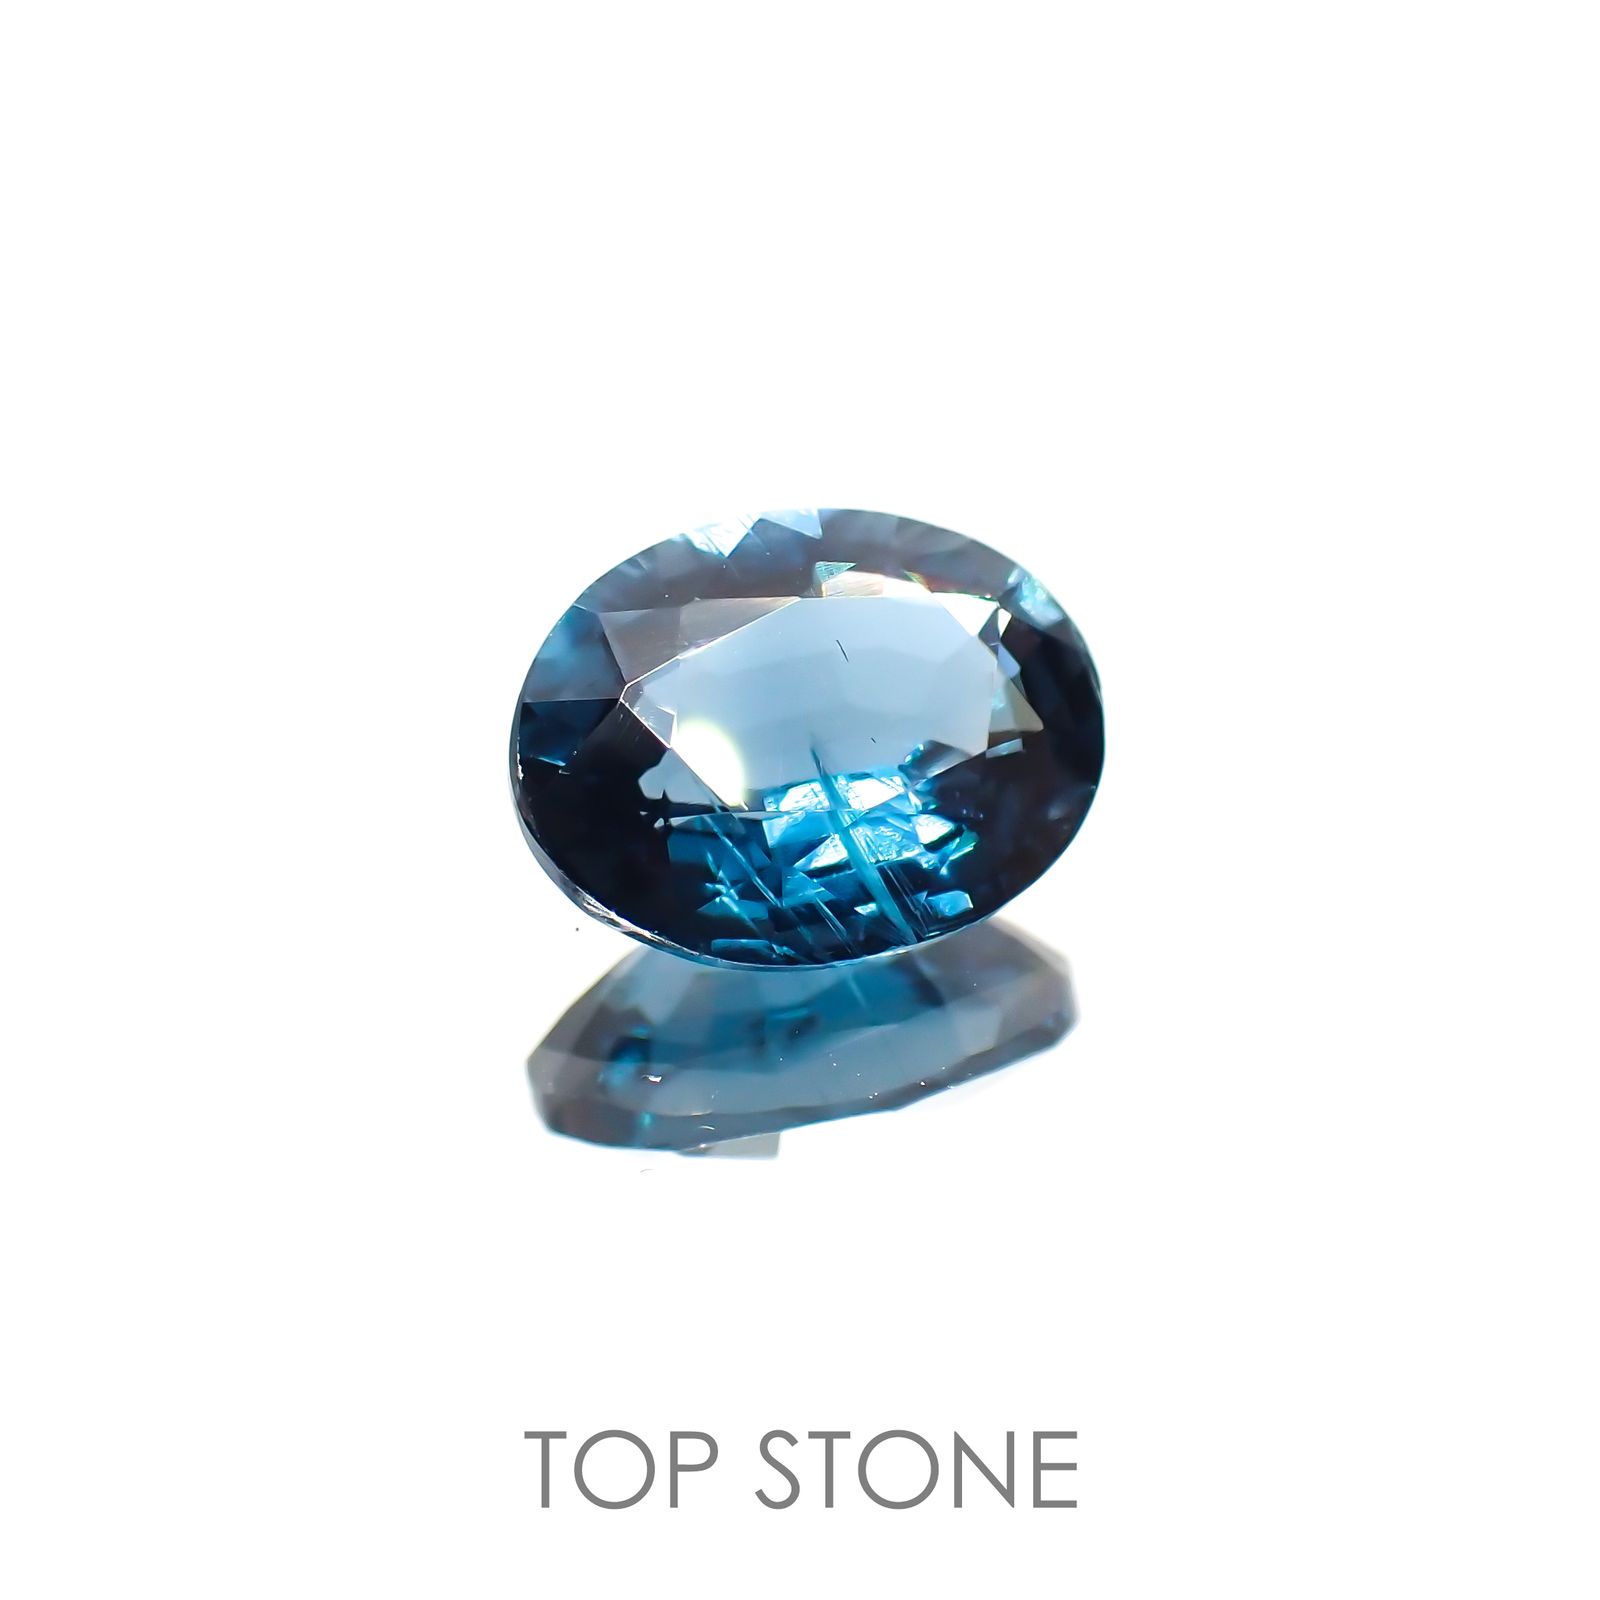 オーシャンブルーカイヤナイト(宝石名カイヤナイト) ネパール産 2.10ct 識別済[210410523]8.8×6.9mm前後 | TOP  STONE(トップストーン)